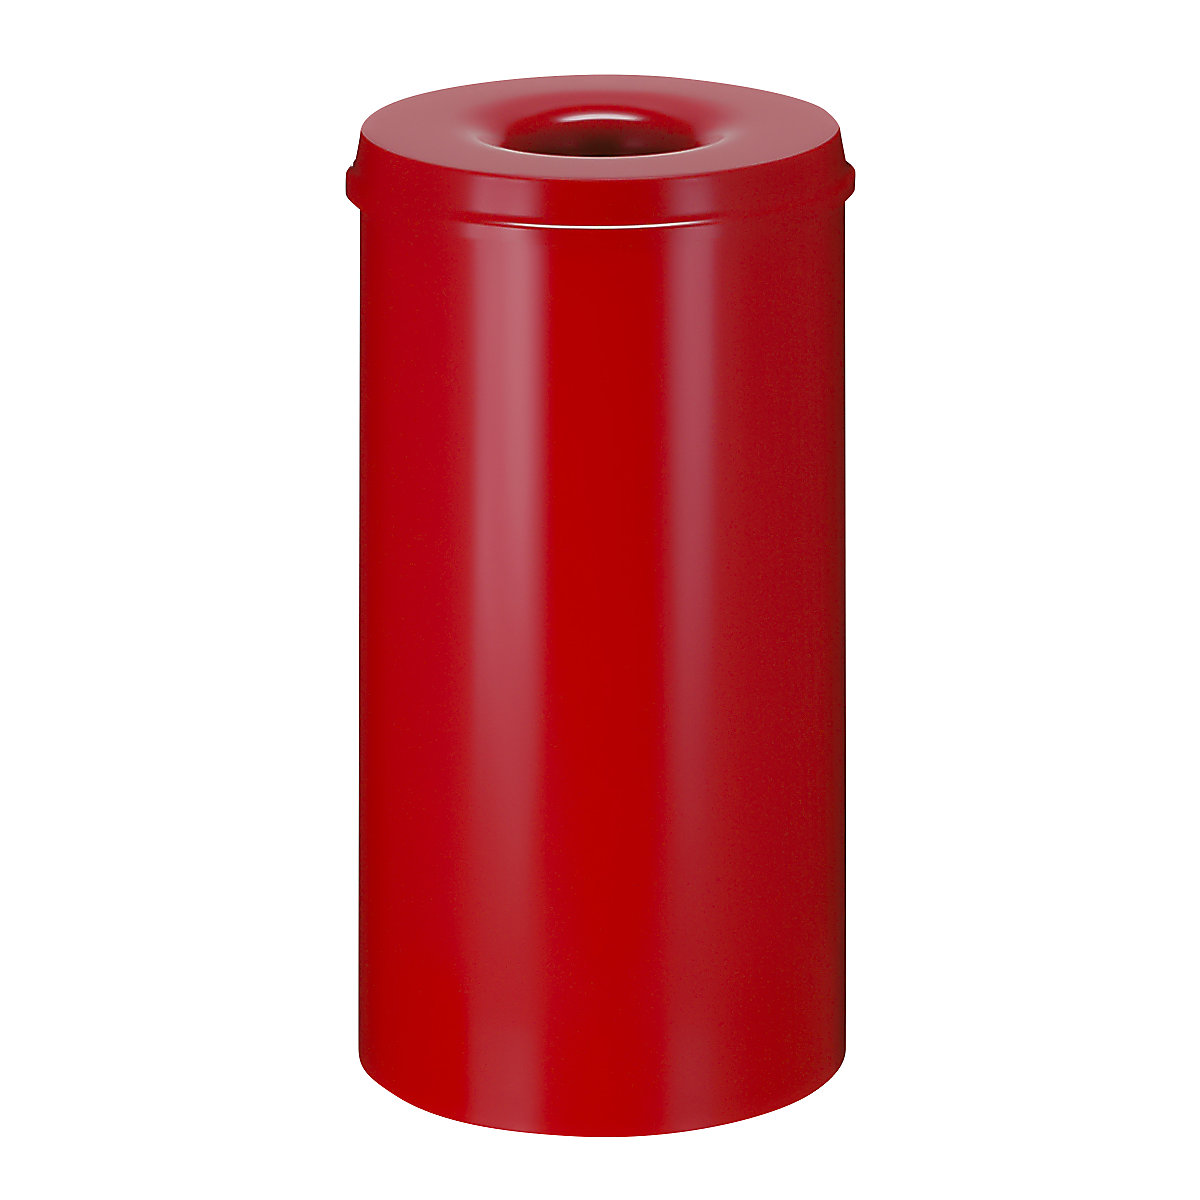 Önoltó papírkosár, űrtartalom 50 l, ma x Ø 625 x 335 mm, ház piros / oltófedél piros színben